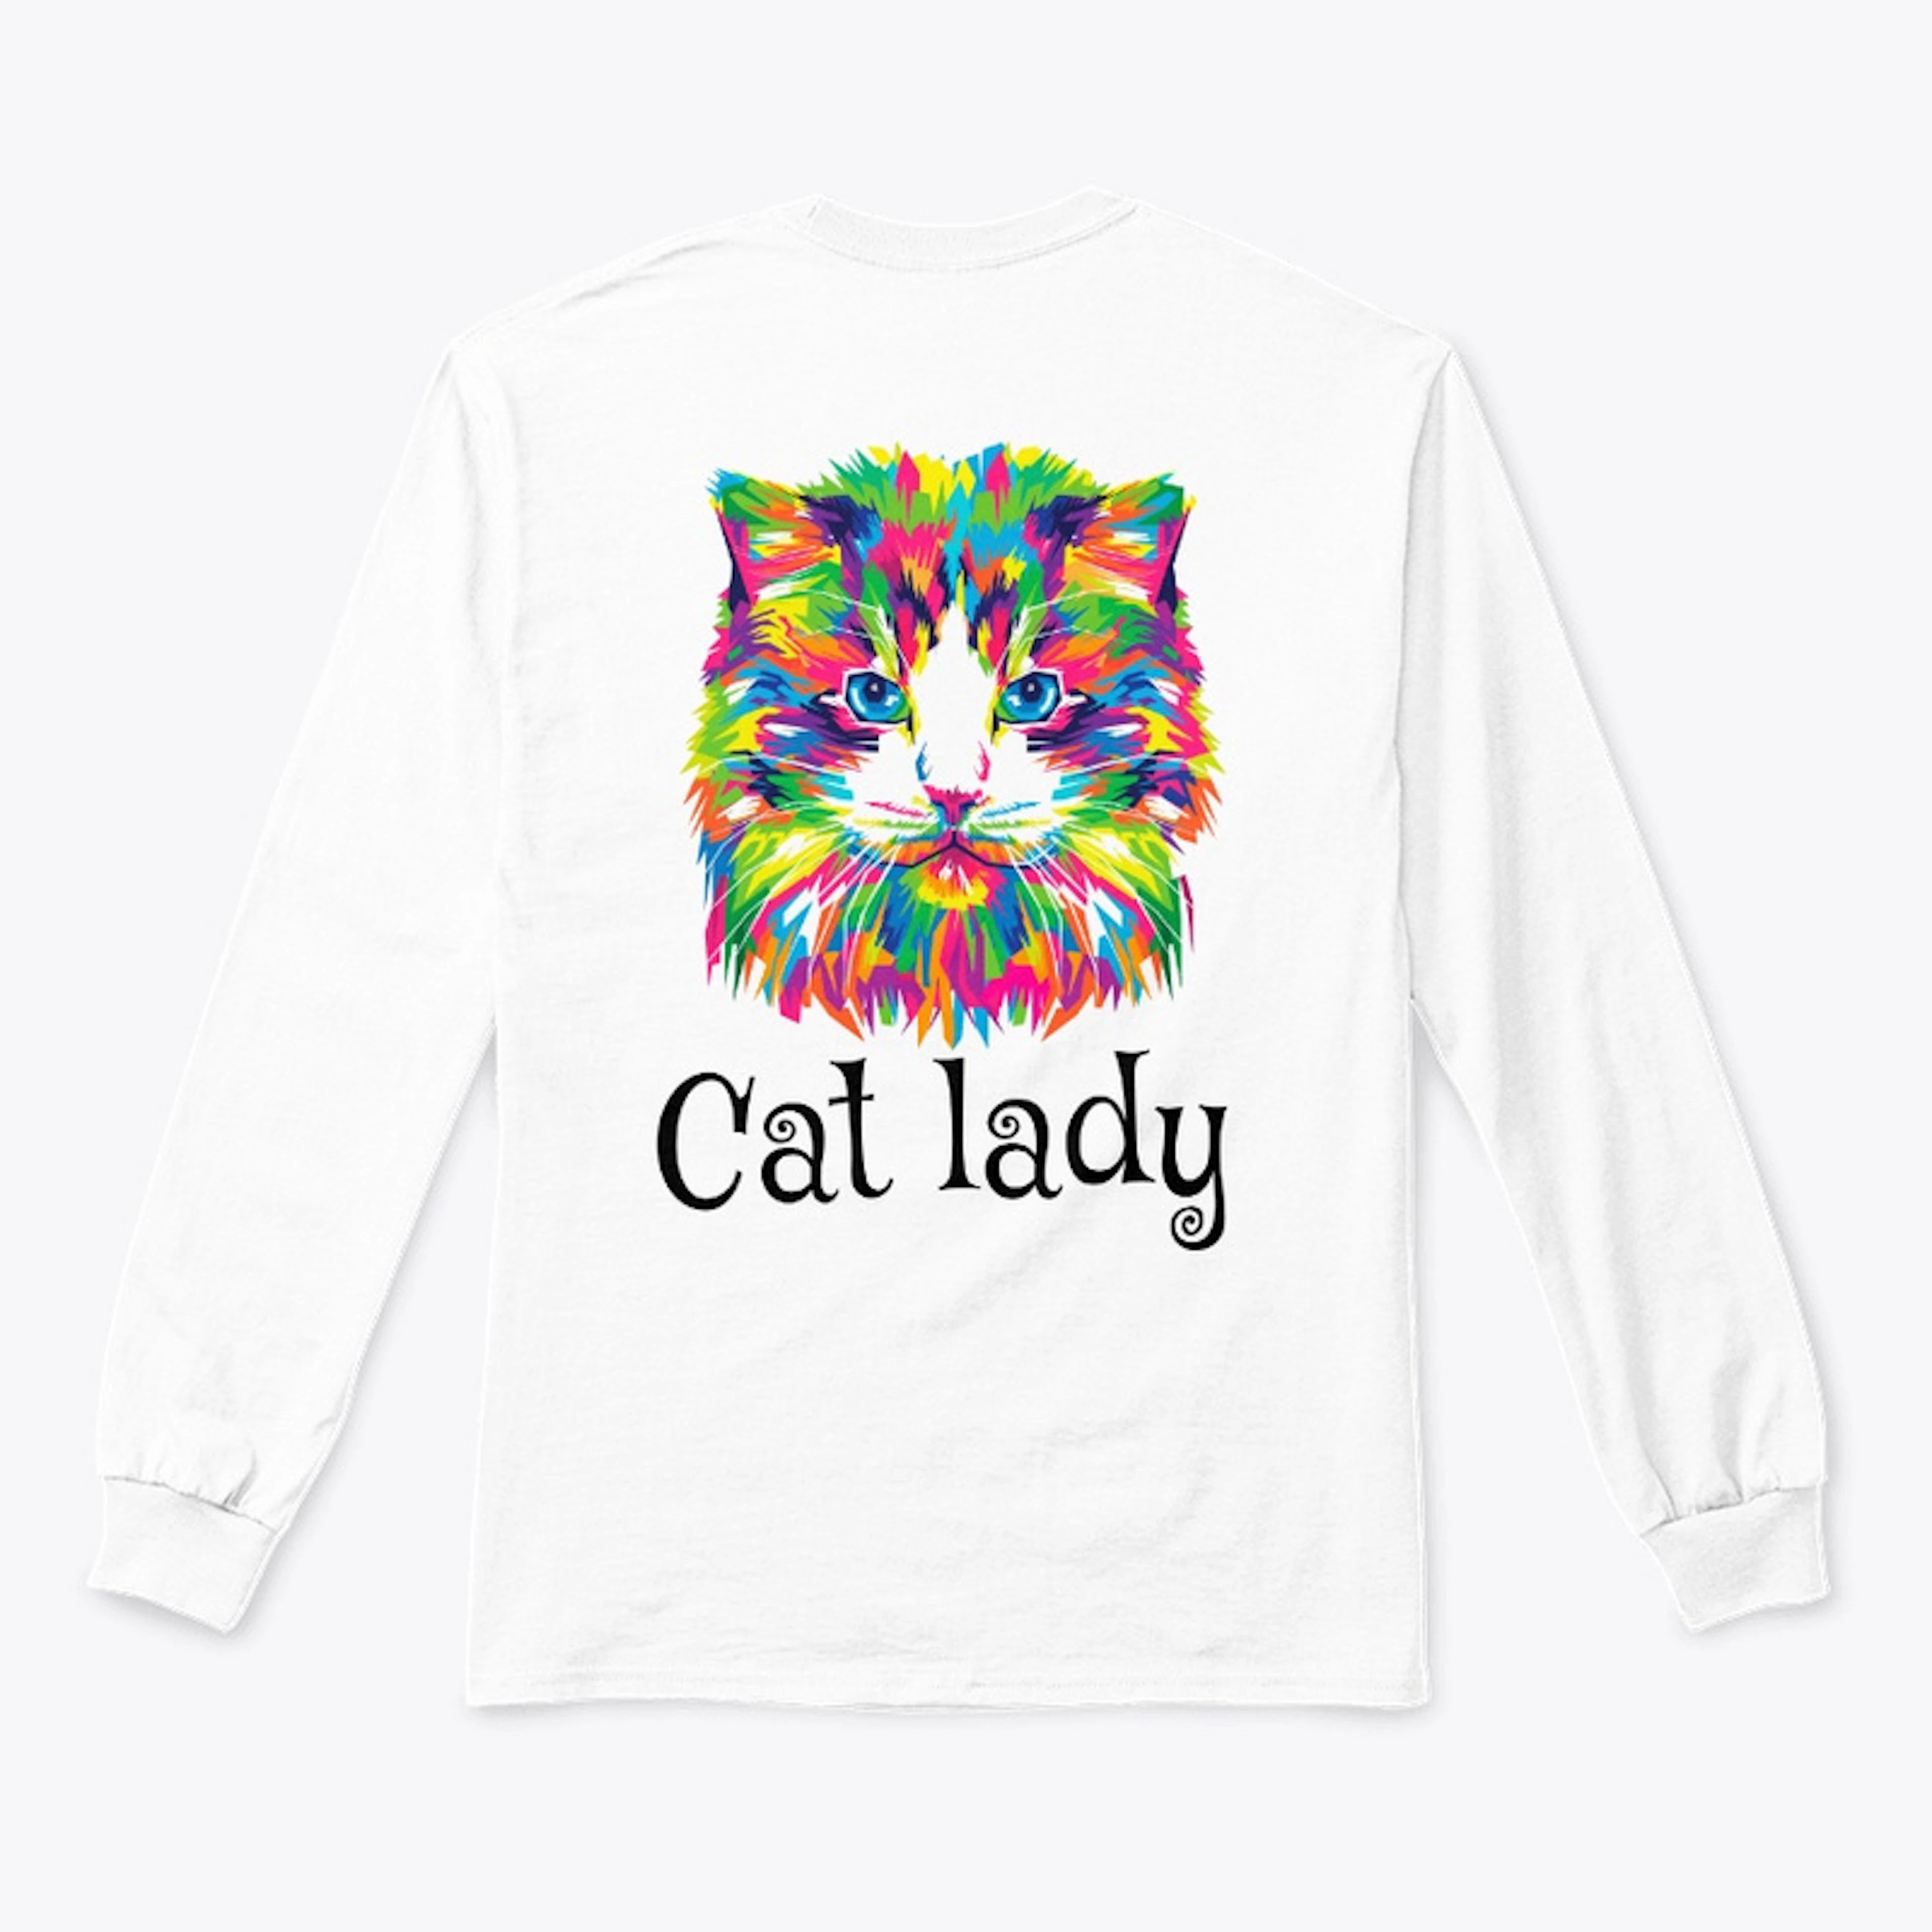 Cat Lady